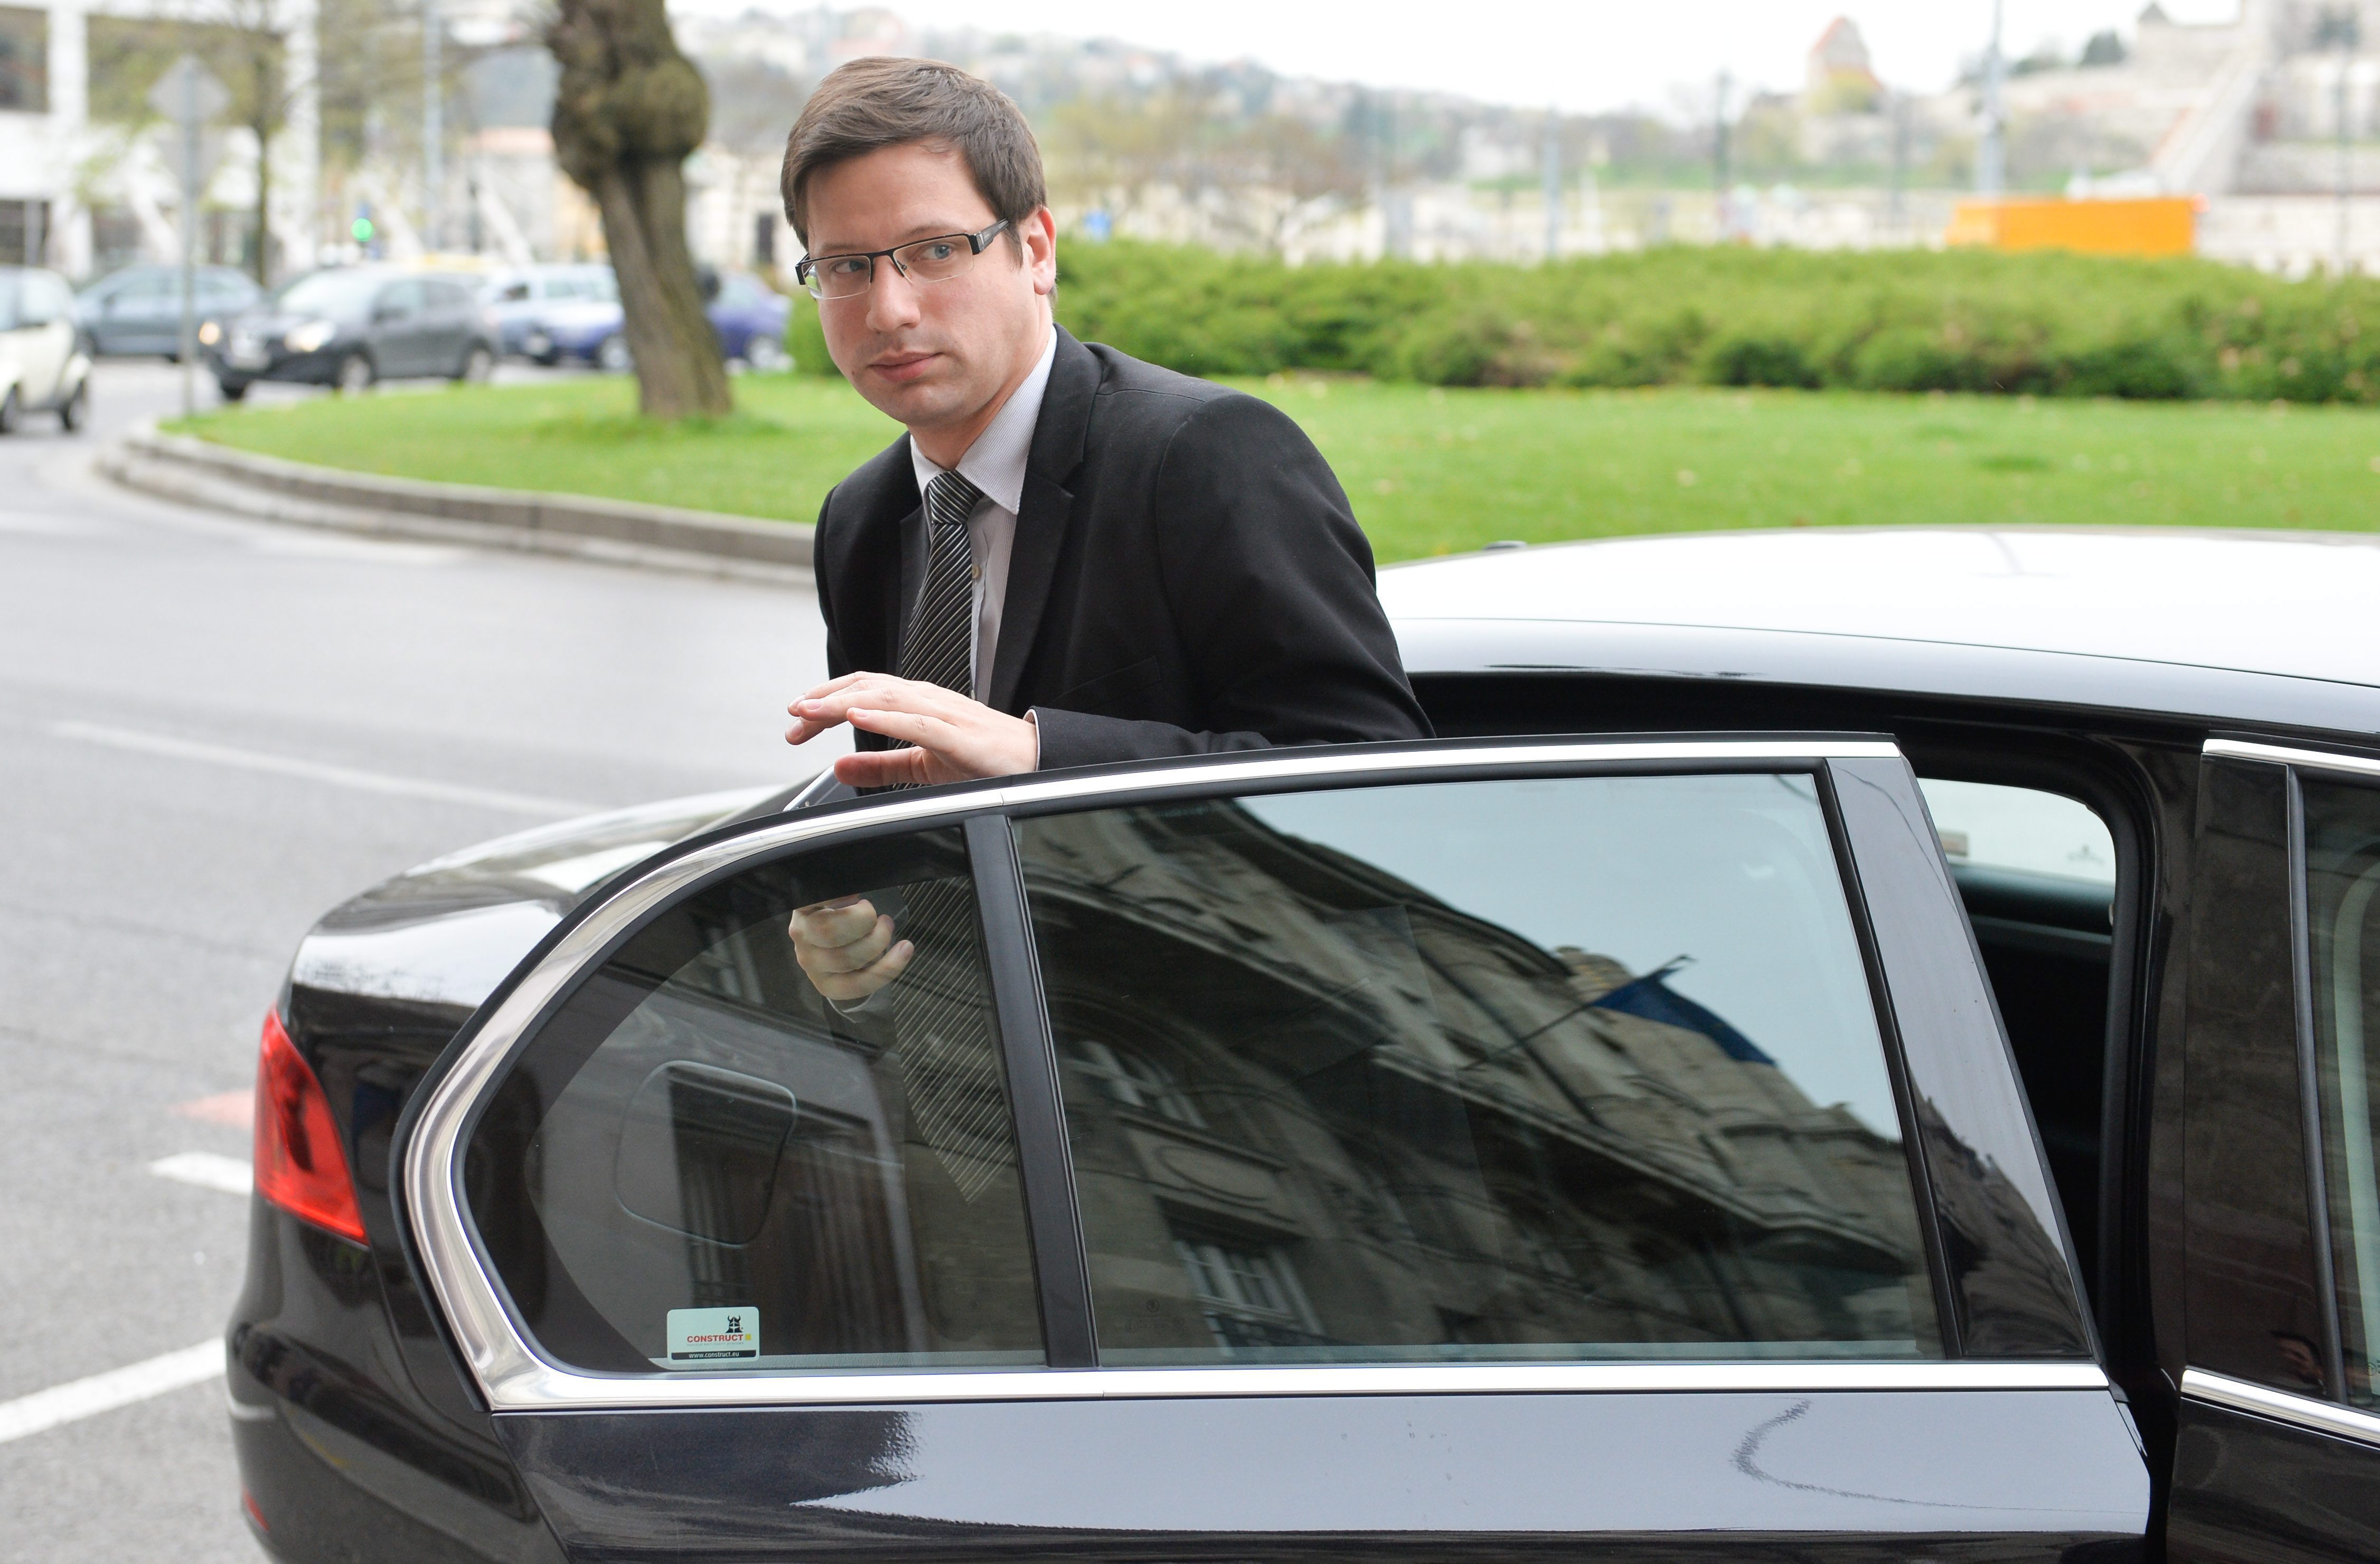 Taxival ütközött Gulyás Gergely miniszteri autója